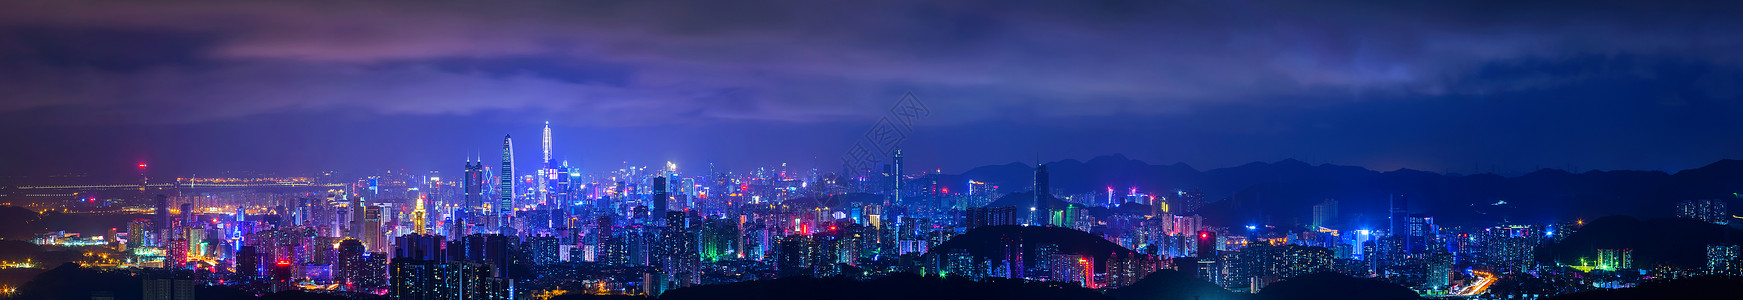 京州深圳城市夜景背景